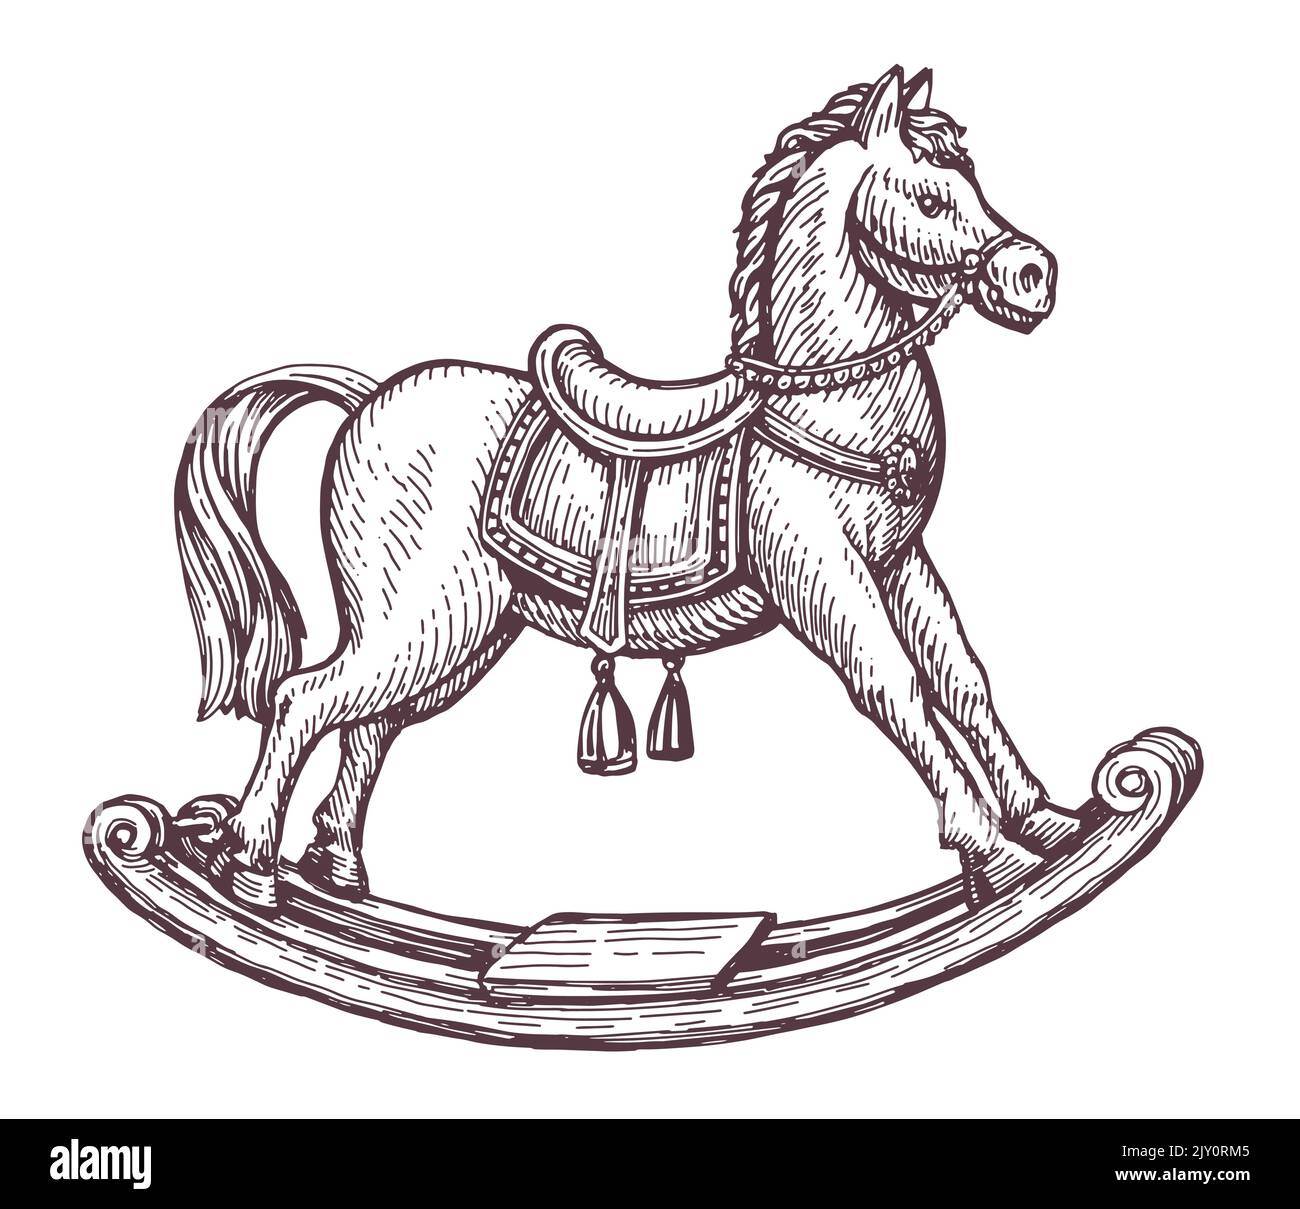 Boceto retro de madera del caballo oscilante. Juguete para niños en estilo grabado vintage. Ilustración vectorial aislada en blanco Ilustración del Vector